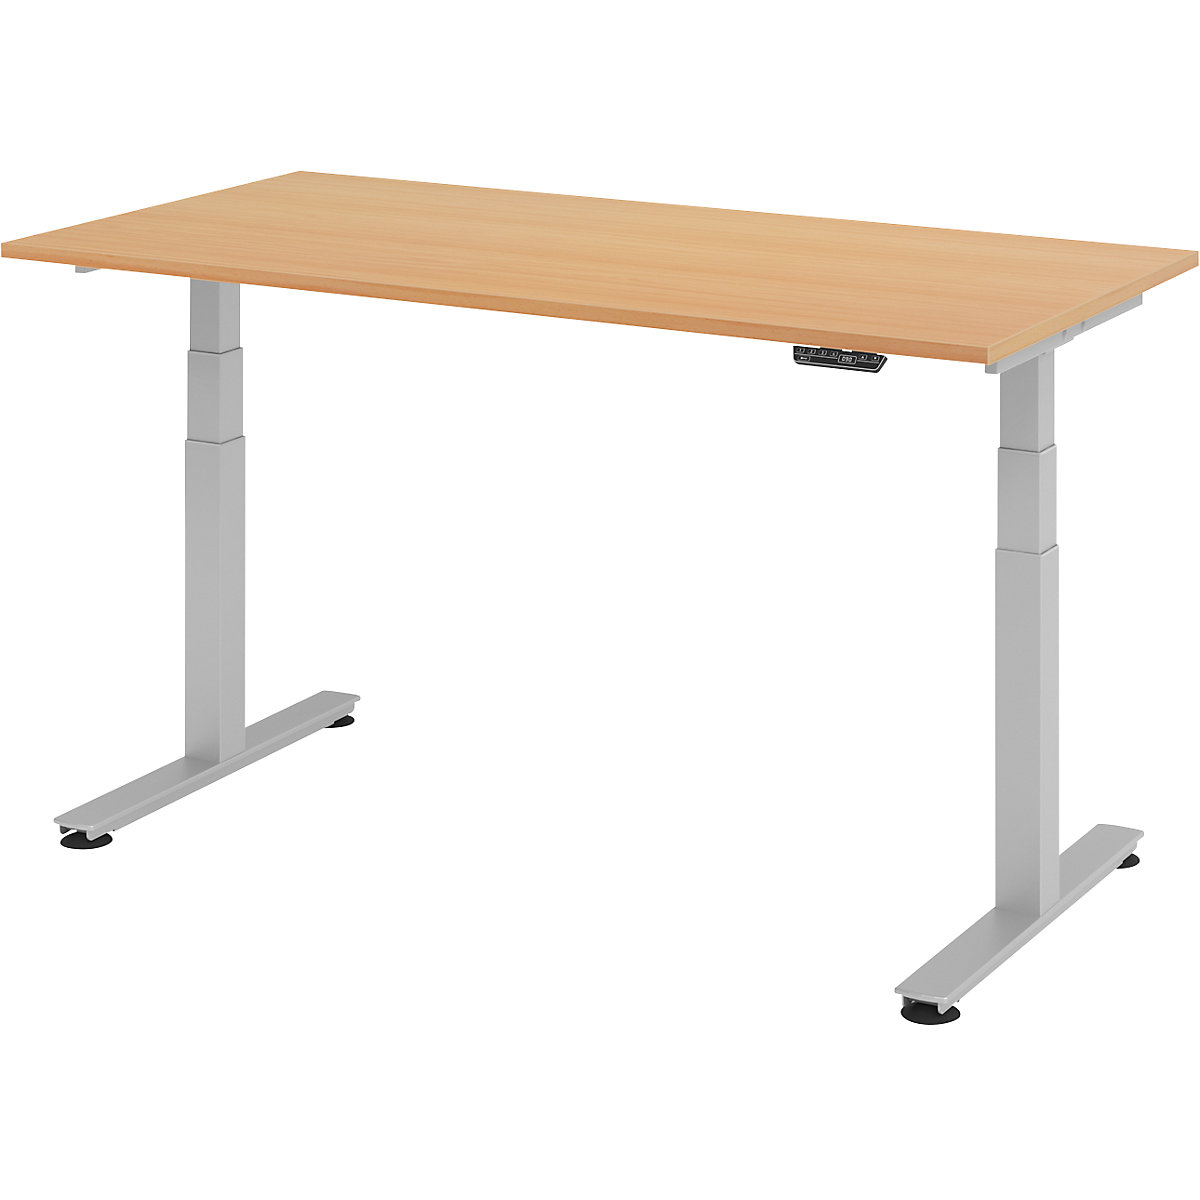 Sta-bureautafel, elektrisch in hoogte verstelbaar UPLINER-2.0, recht, b x d = 1600 x 800 mm, beukenhout-9